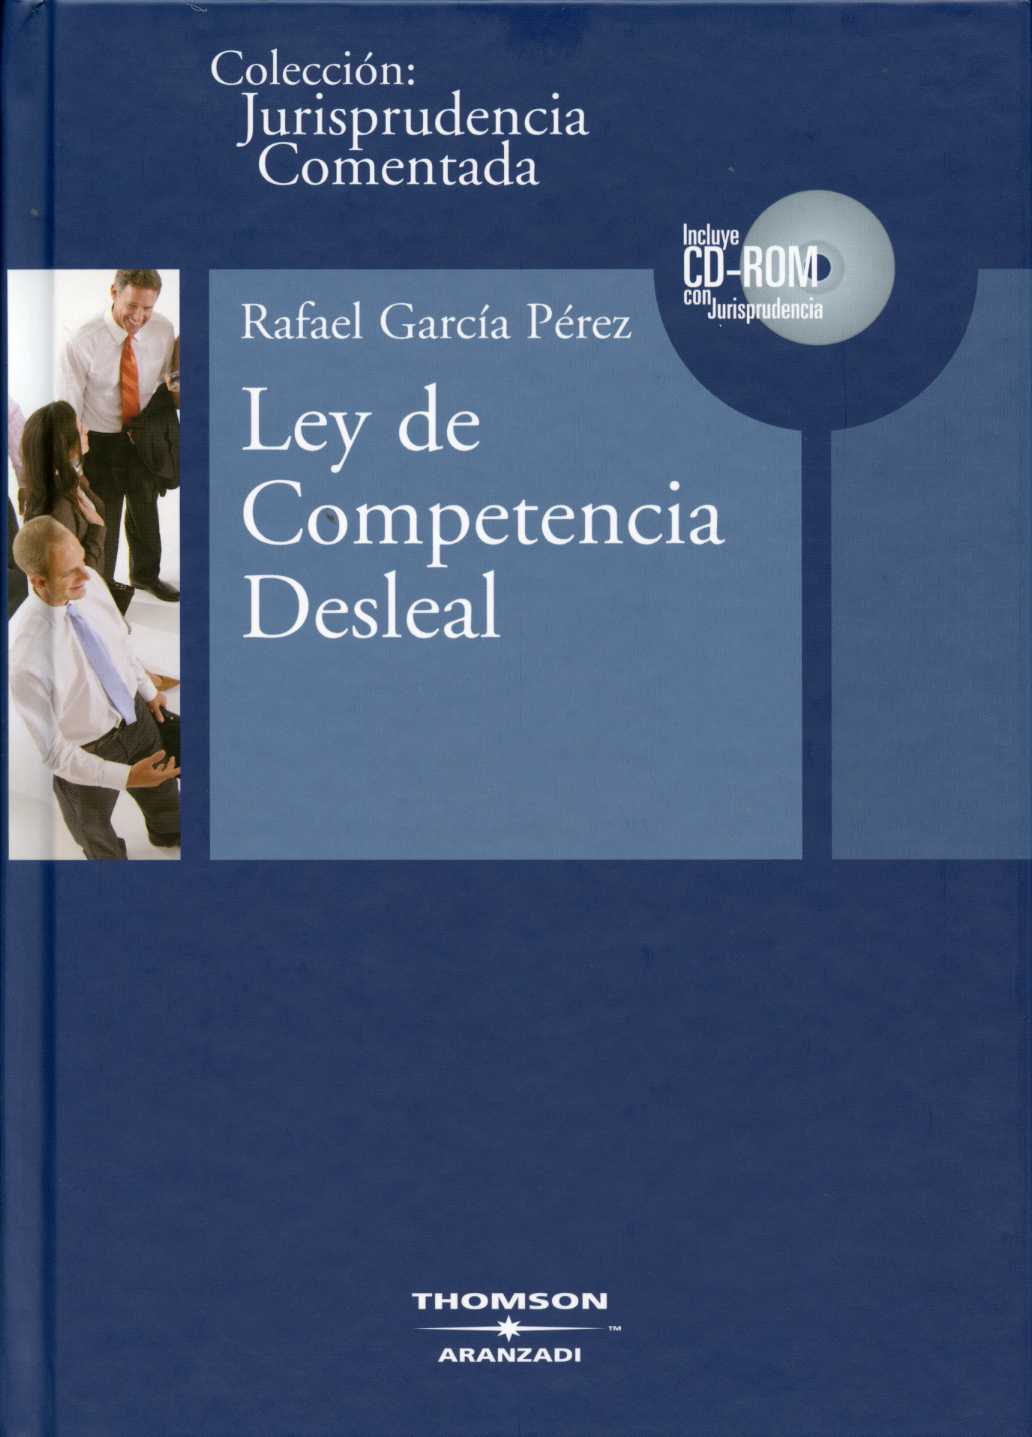 Ley de Competencia Desleal. CD-ROM Con Jurisprudencia. -0